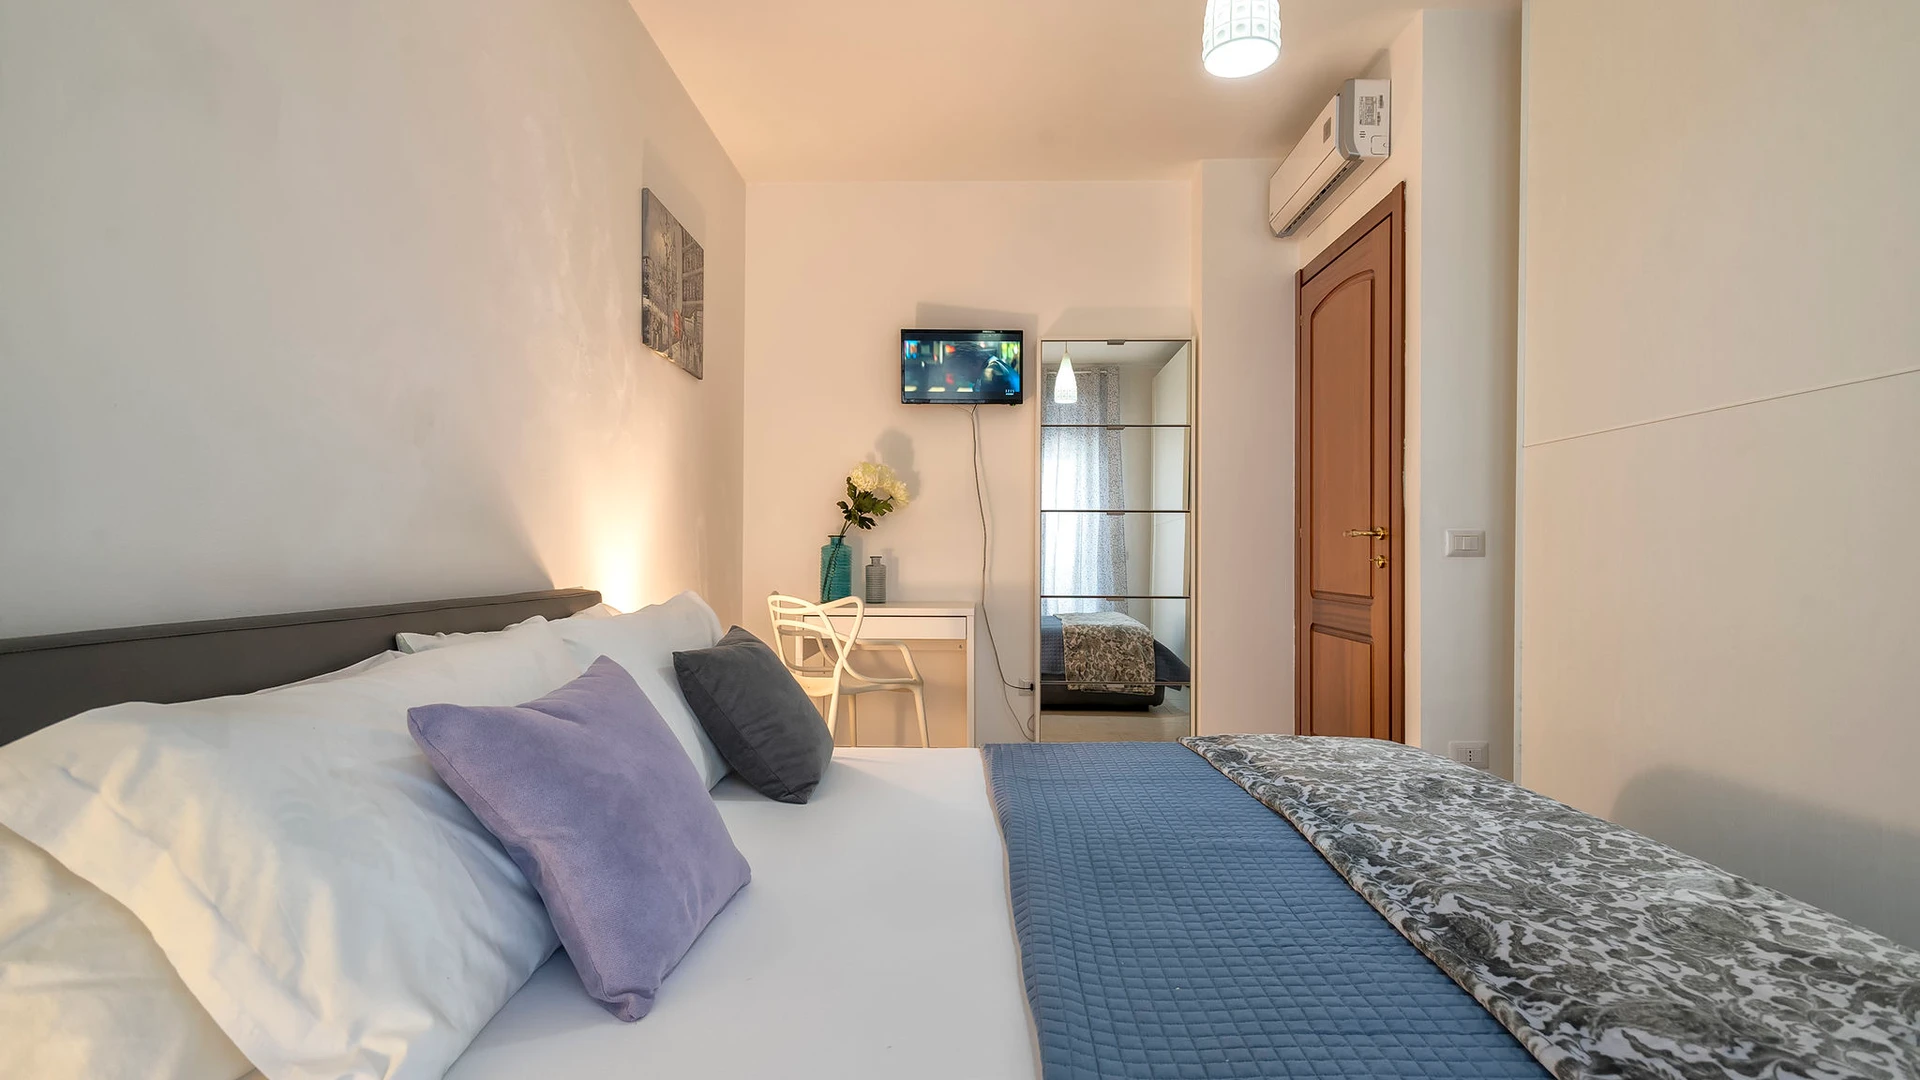 Apartamento moderno e brilhante em L'alguer/alghero